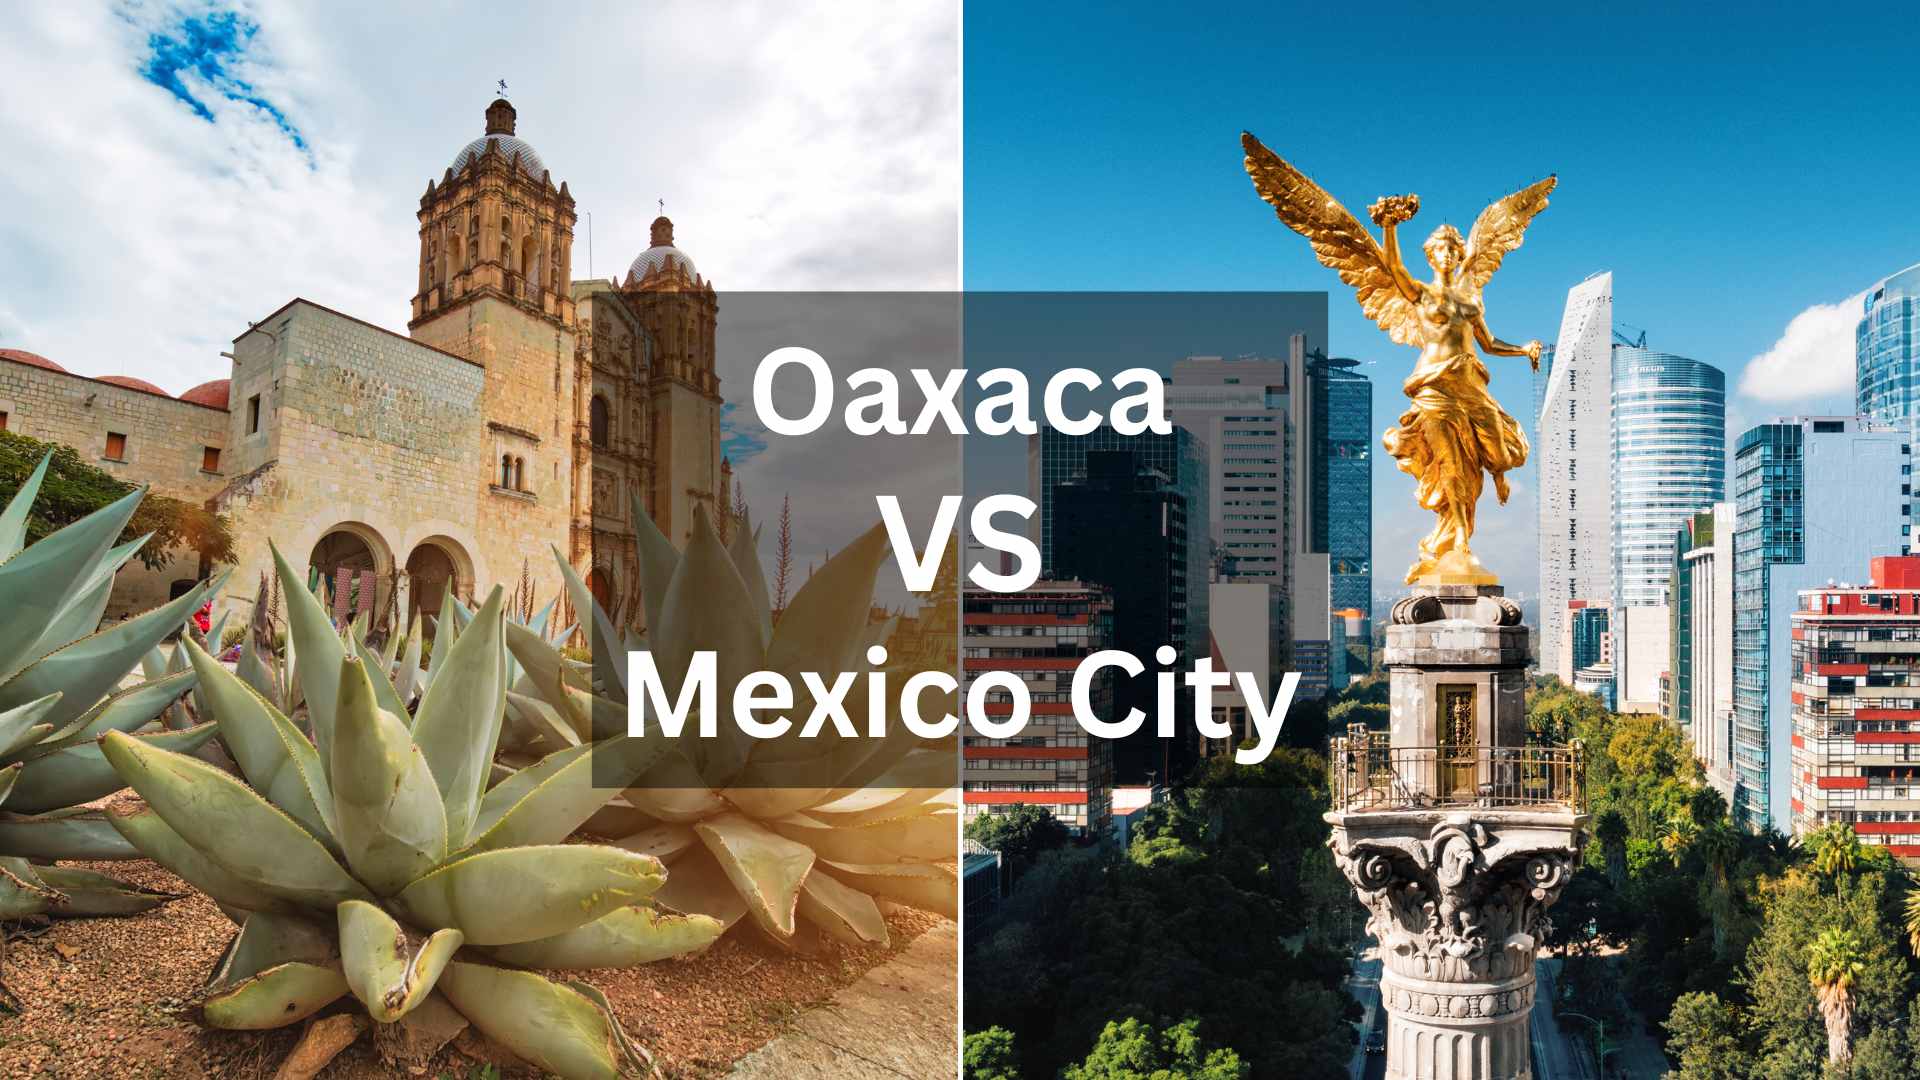 Oaxaca VS Mexico City